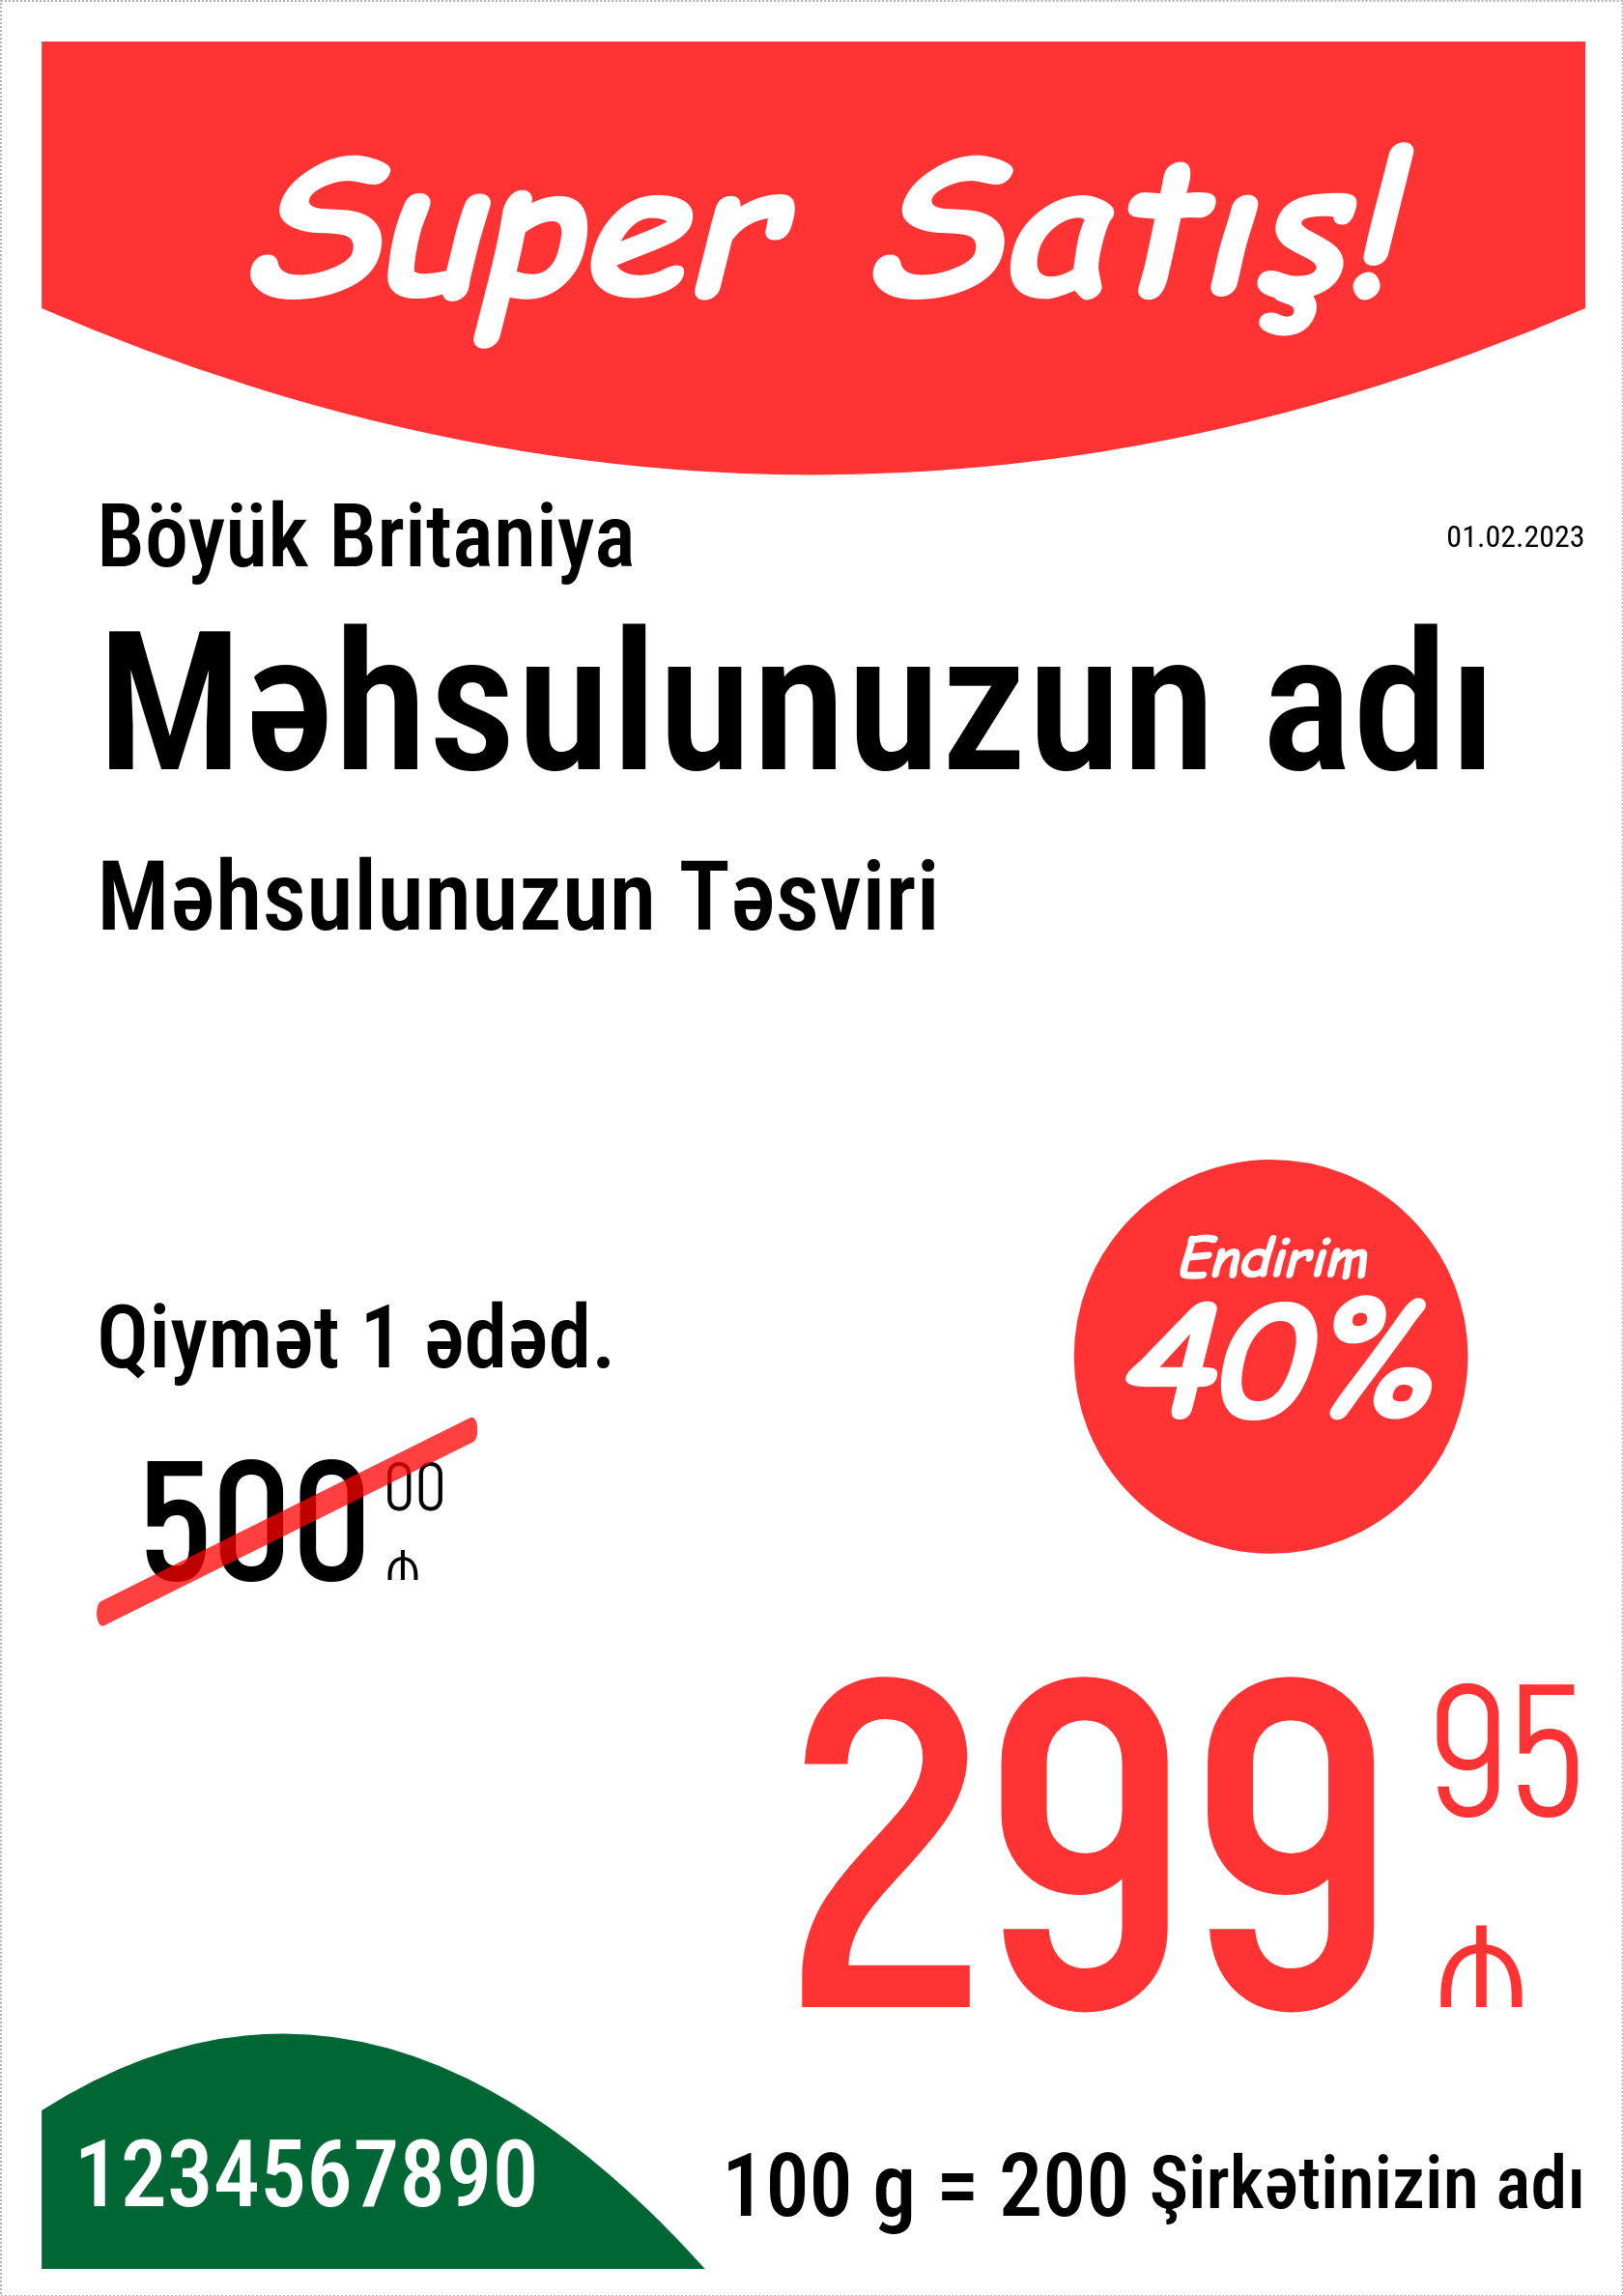 Qiymət etiketi Orijinal / Şaquli / A4 formatı (tam səhifə) / Reklam